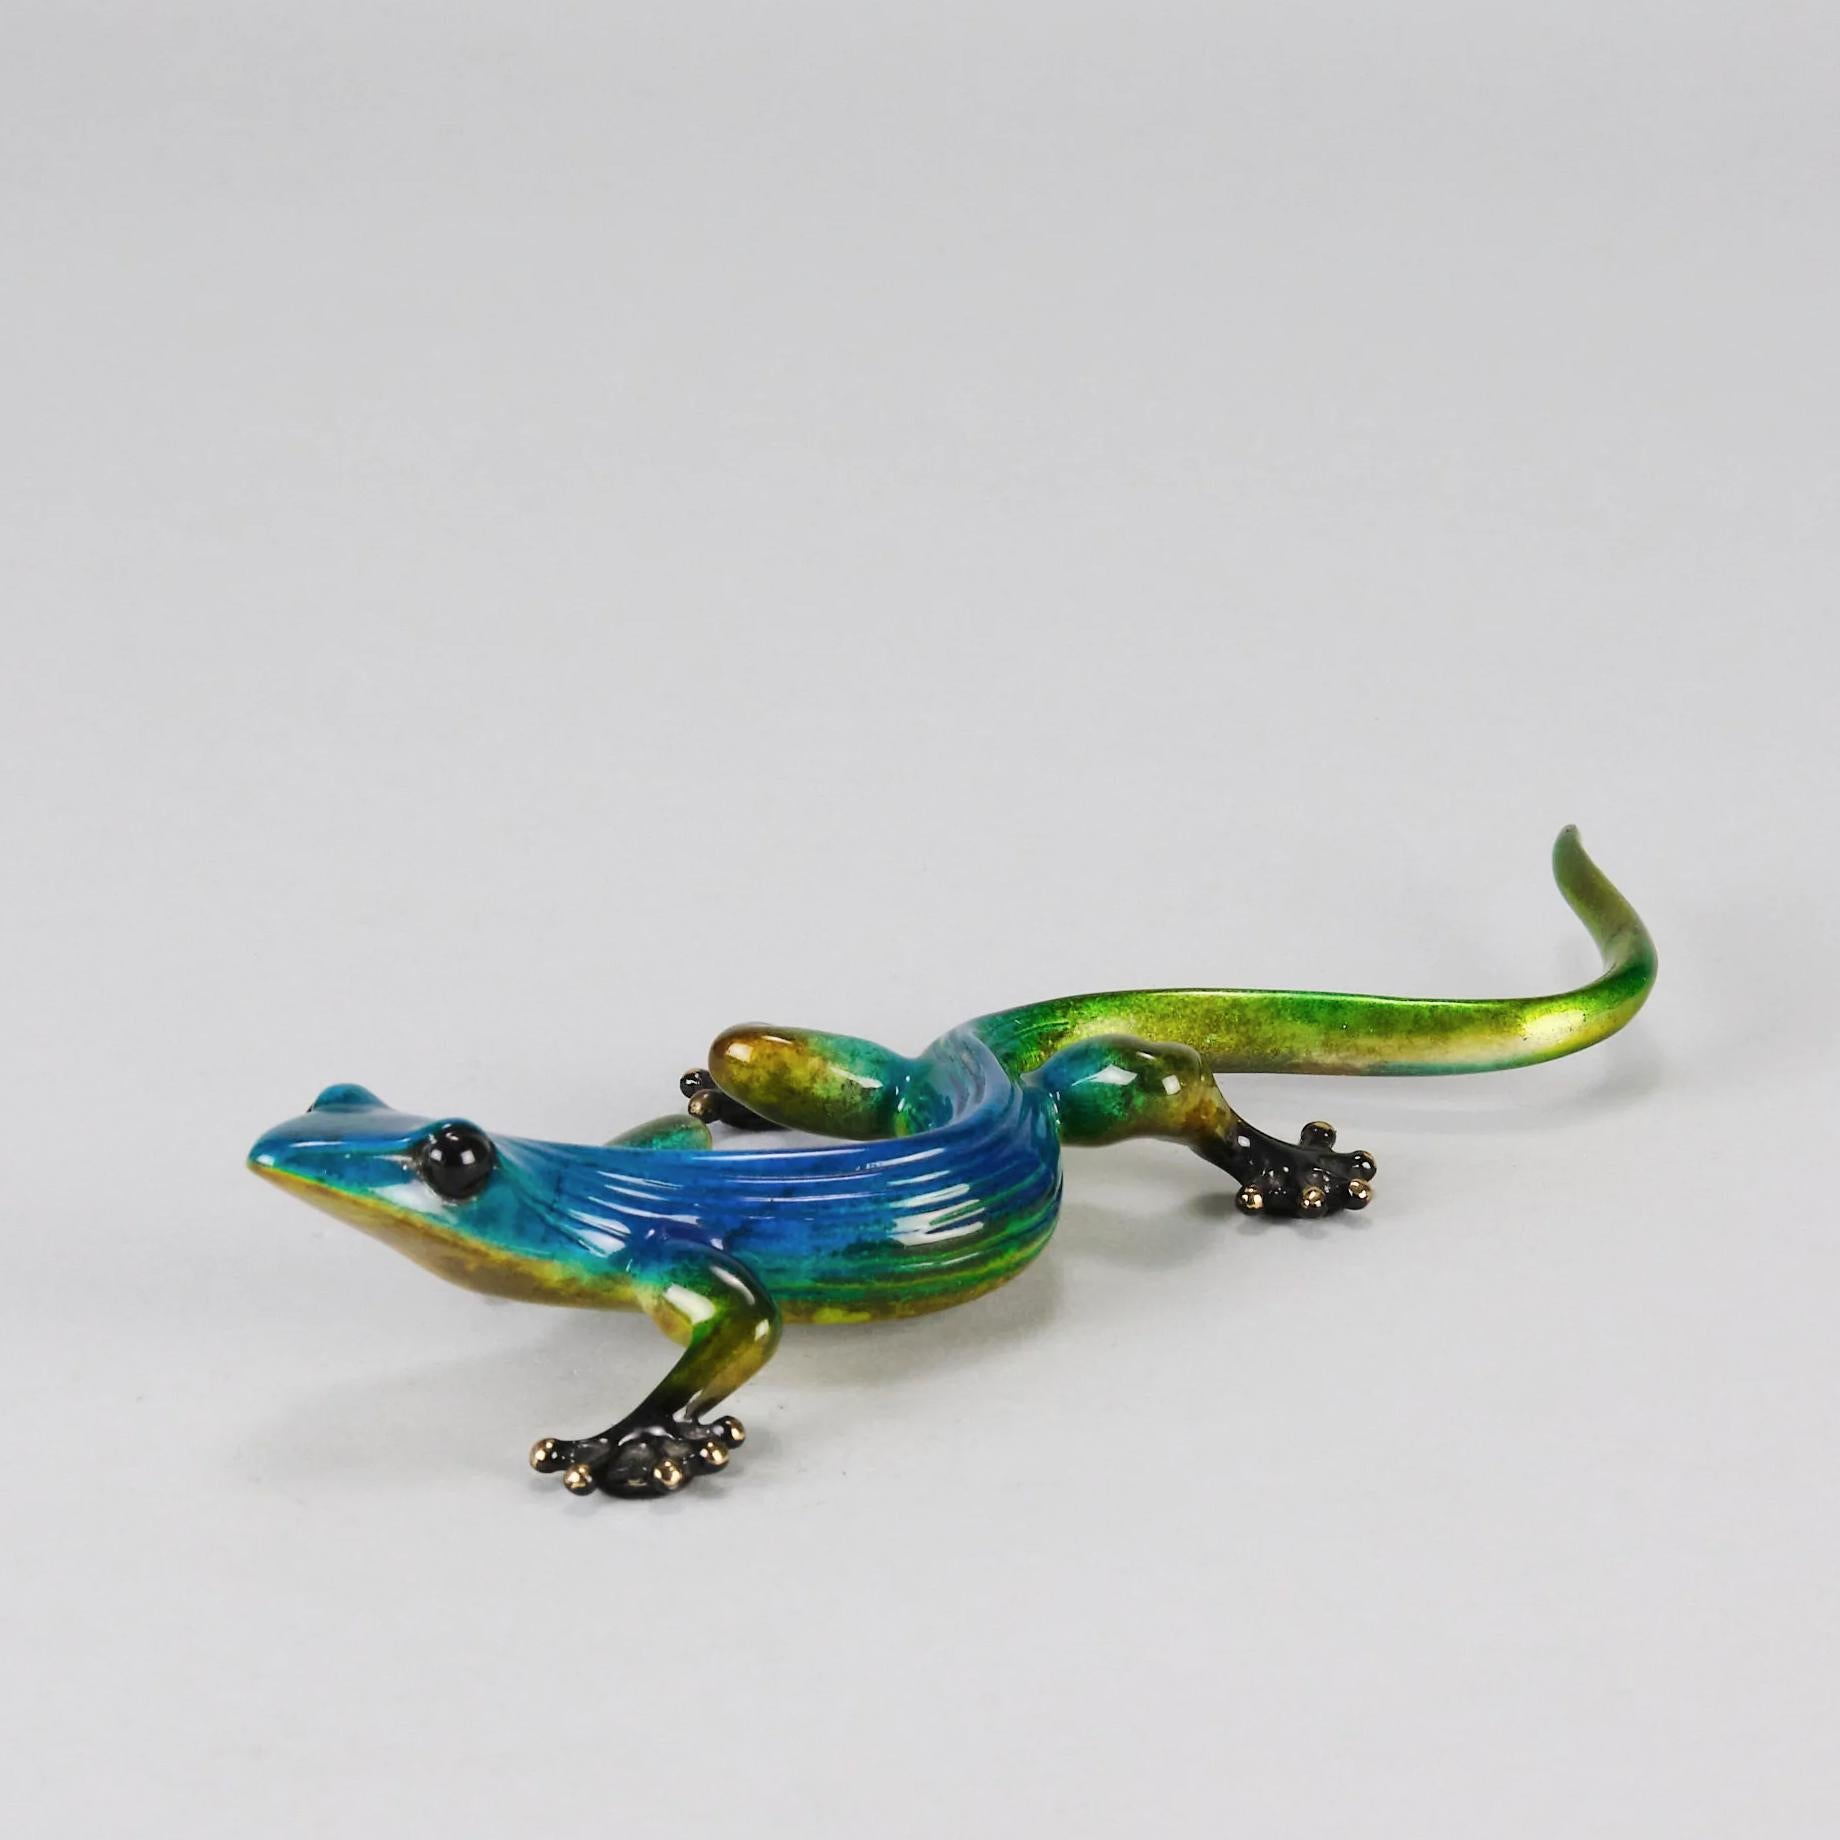 Eine wunderbare Bronzestudie eines Geckos mit erhobenem Kopf in limitierter Auflage mit sehr feinen, leuchtenden Farben und ausgezeichneten Oberflächendetails, signiert Tim und nummeriert AP 96/100 

ZUSÄTZLICHE INFORMATIONEN
Länge:                 